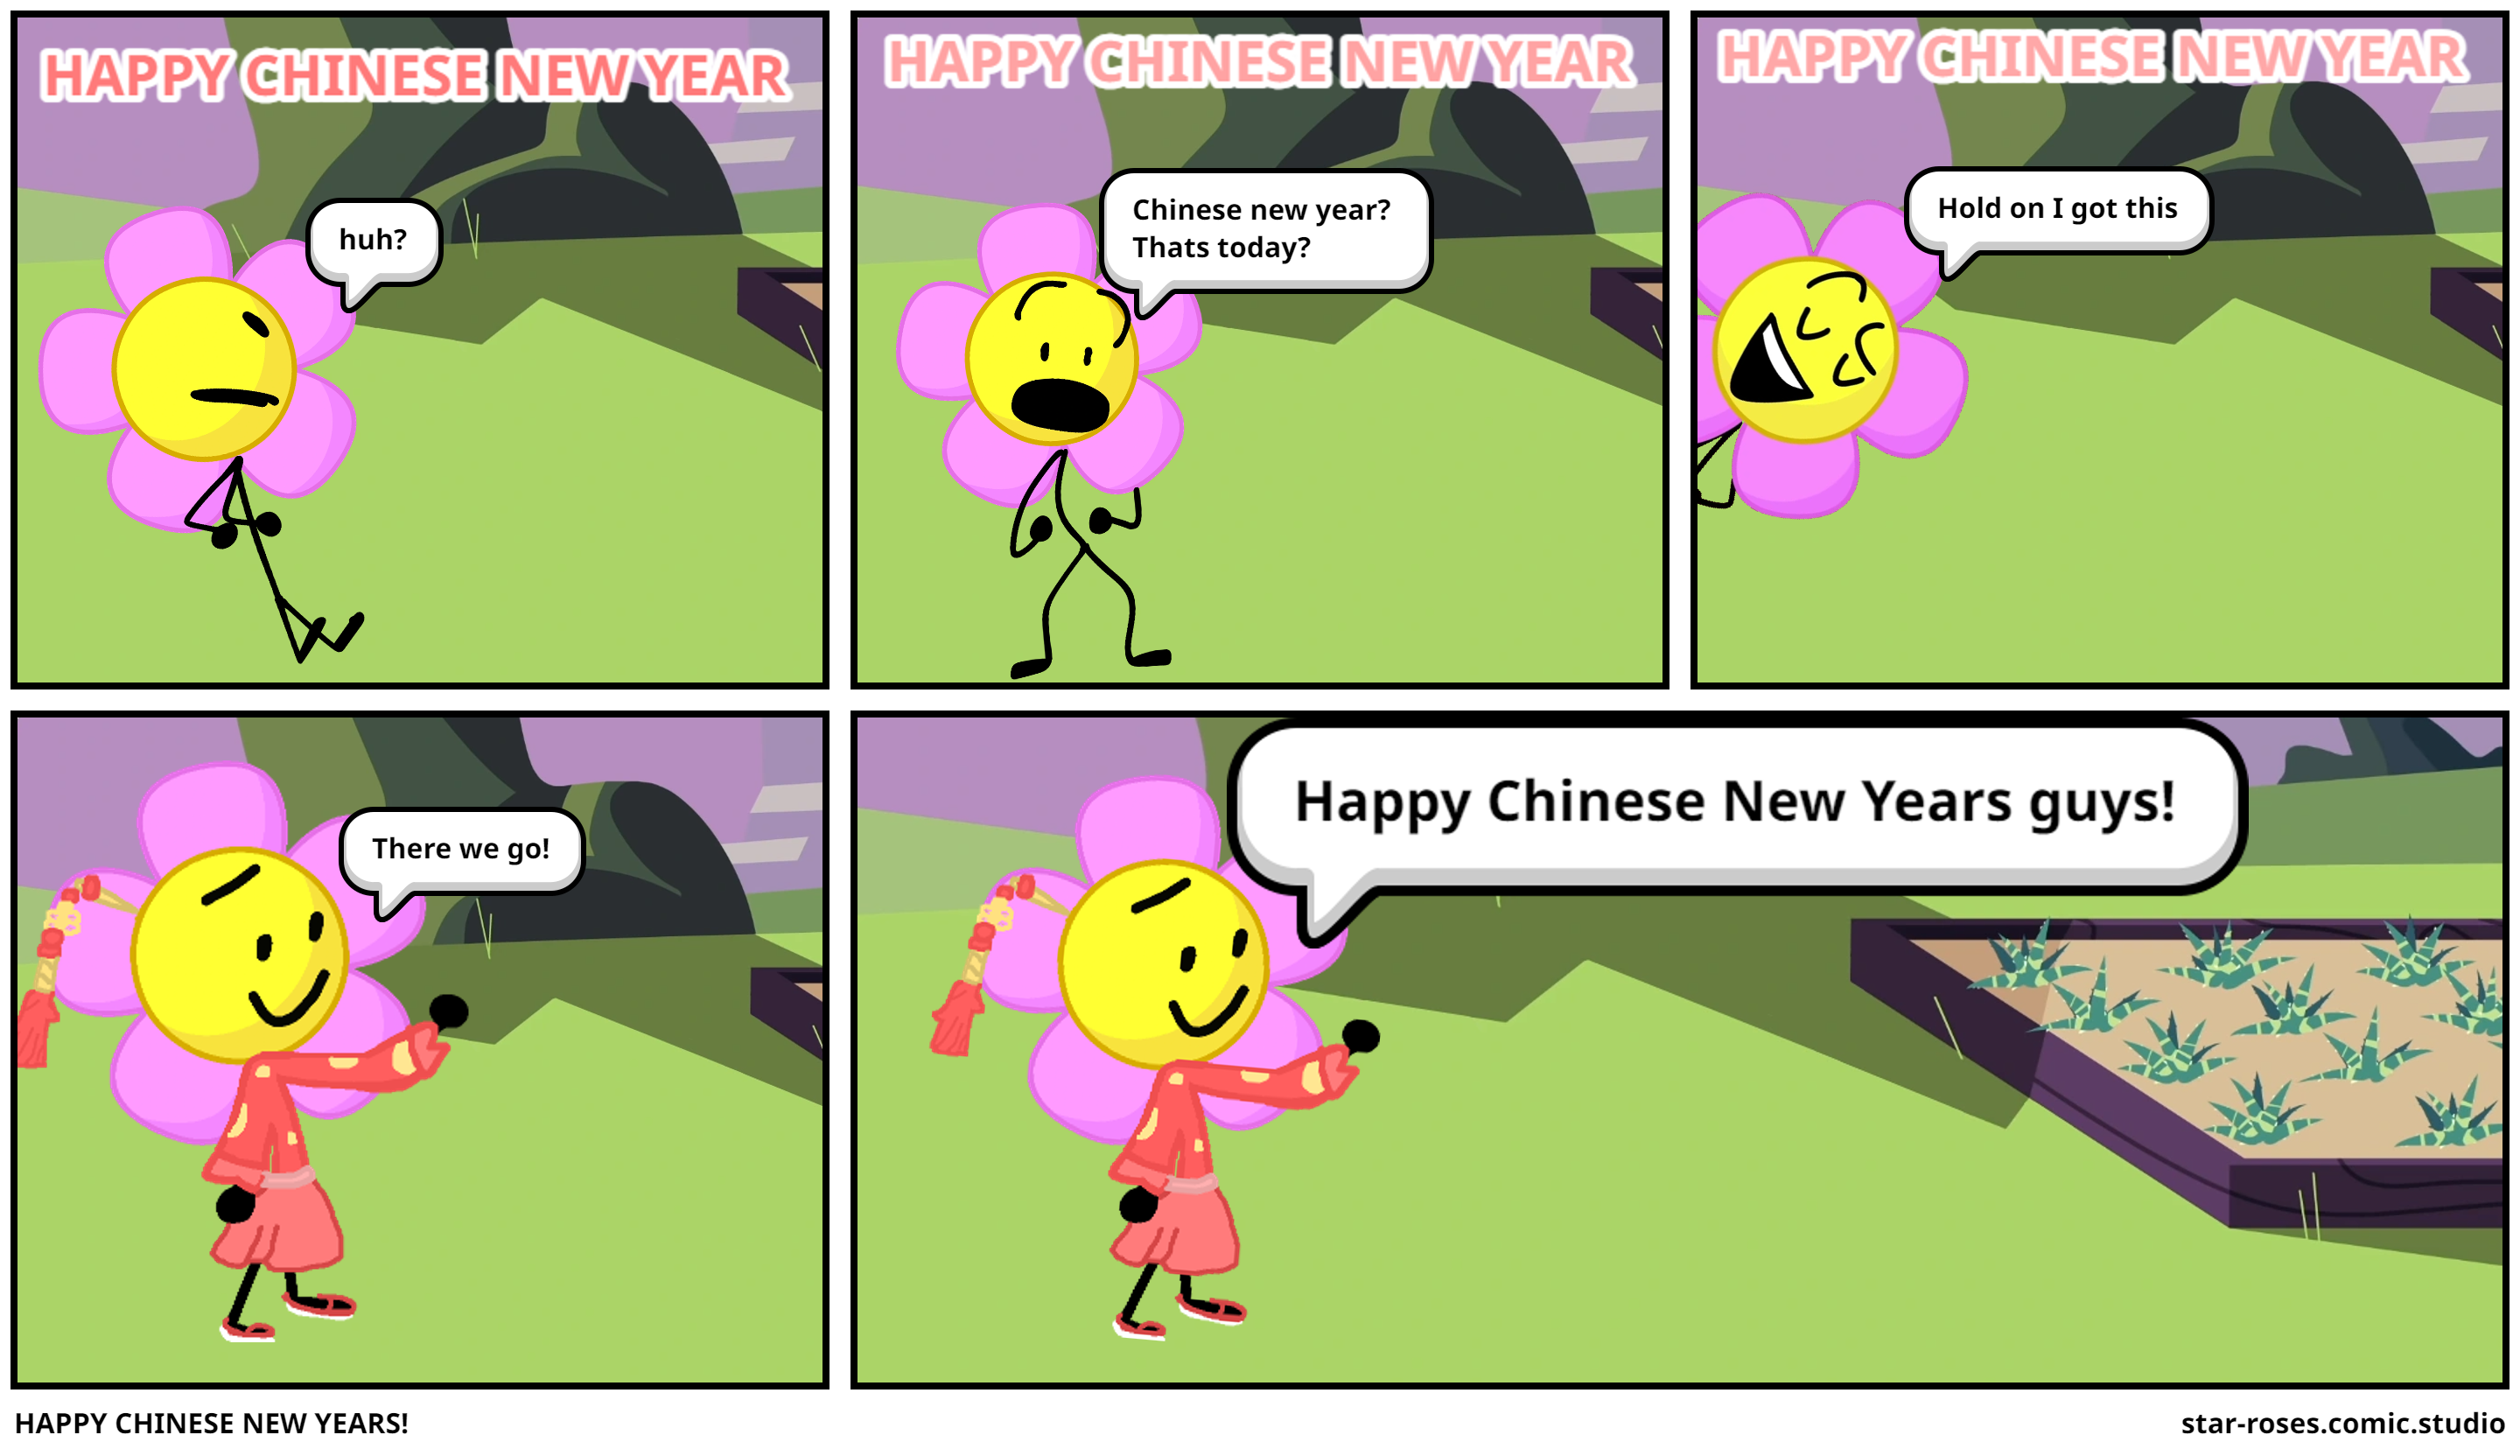 HAPPY CHINESE NEW YEARS!